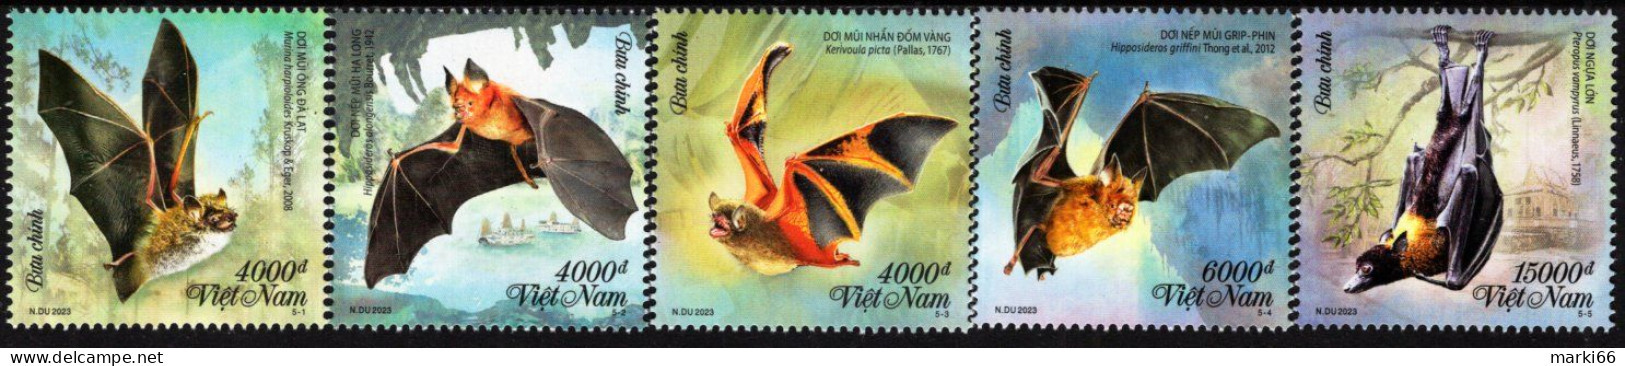 Vietnam - 2023 - Fauna - Bats - Mint Stamp Set - Vietnam